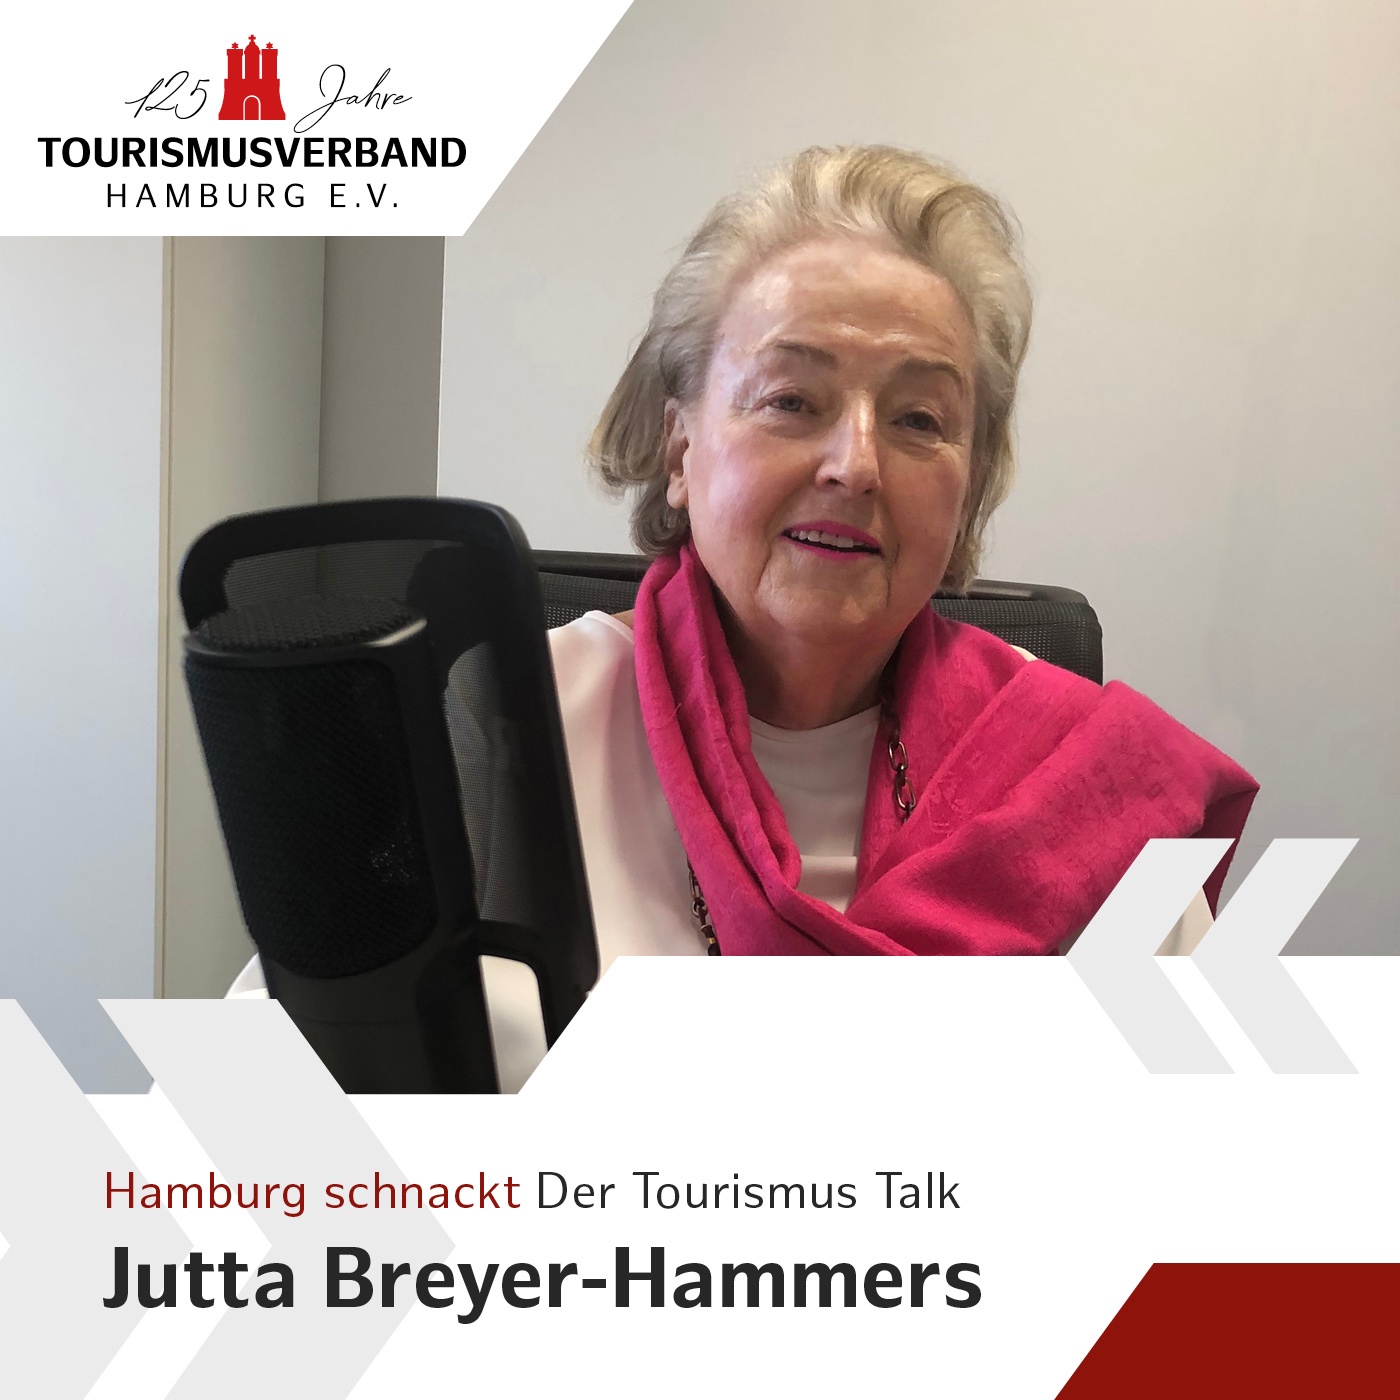 Hamburg schnackt - Jutta Breyer-Hammers